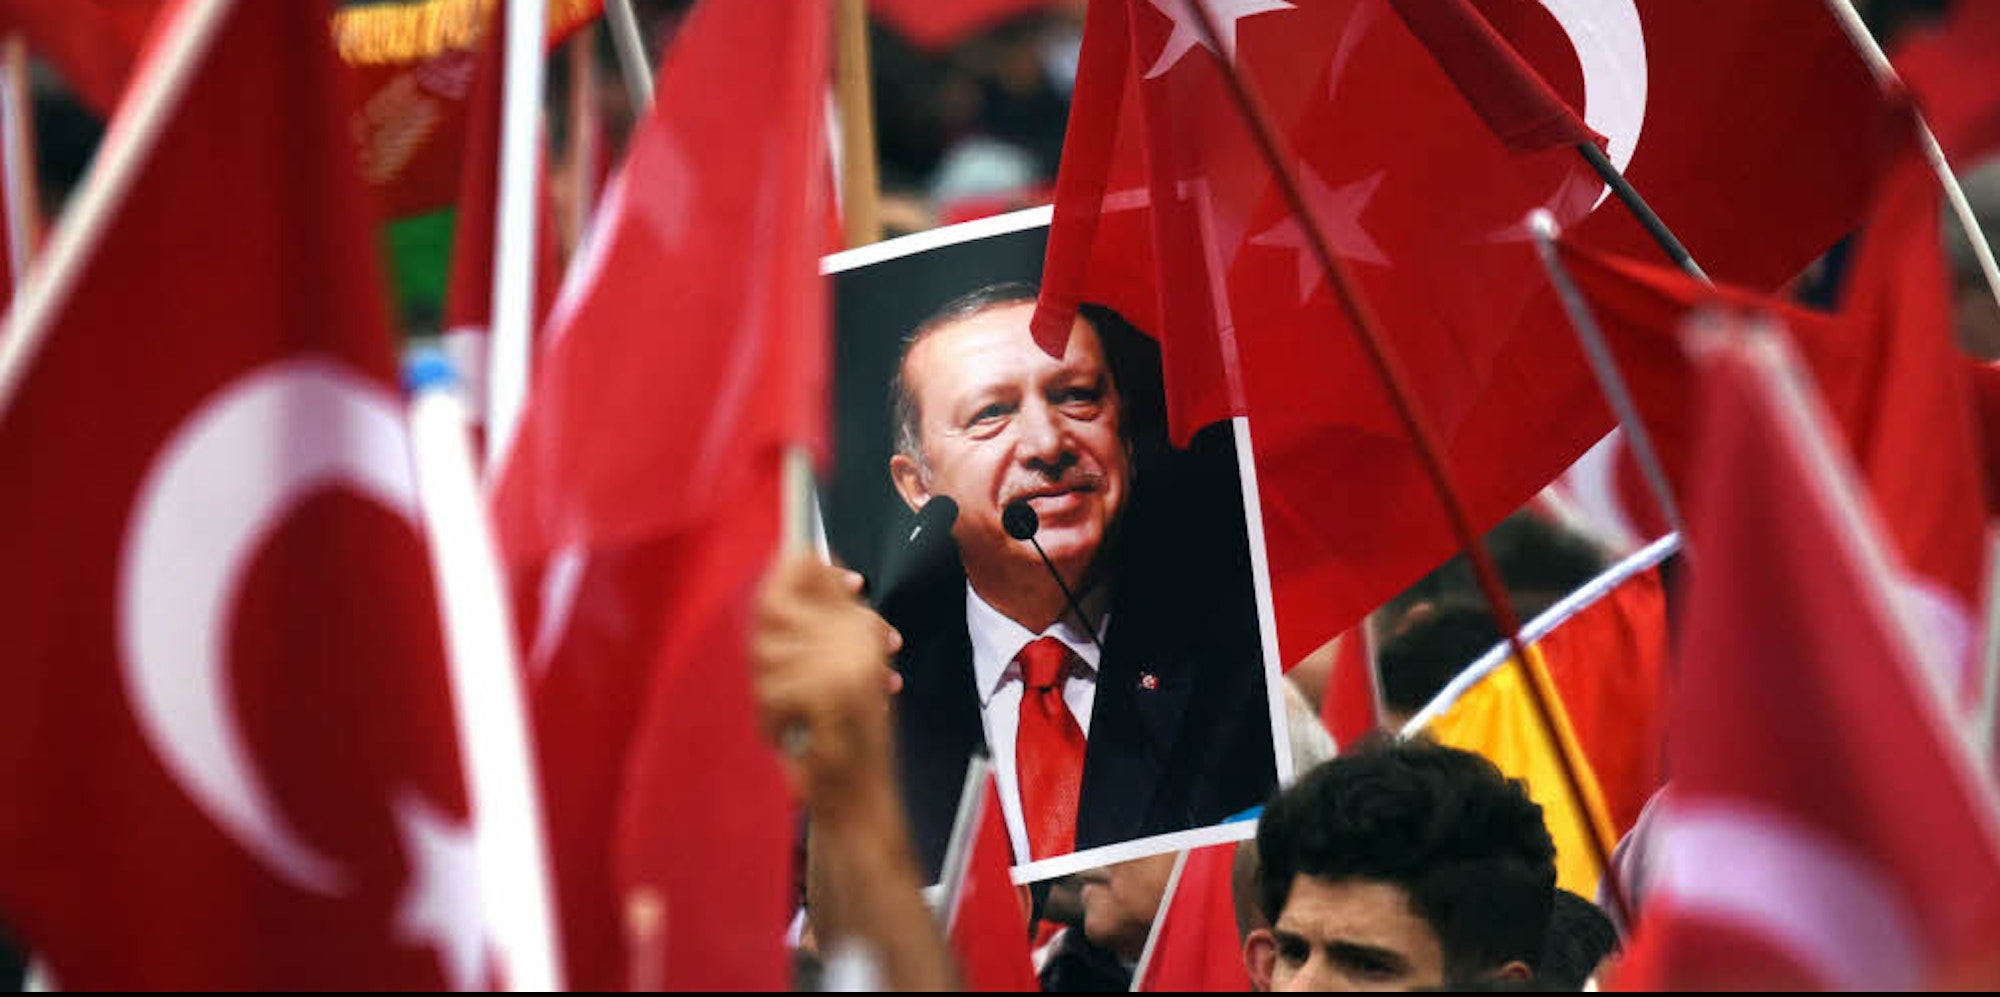 Im Fokus: Der Besuch von Erdogan am 29. September fordert die Polizei und sorgt für massive Behinderungen in der Stadt.